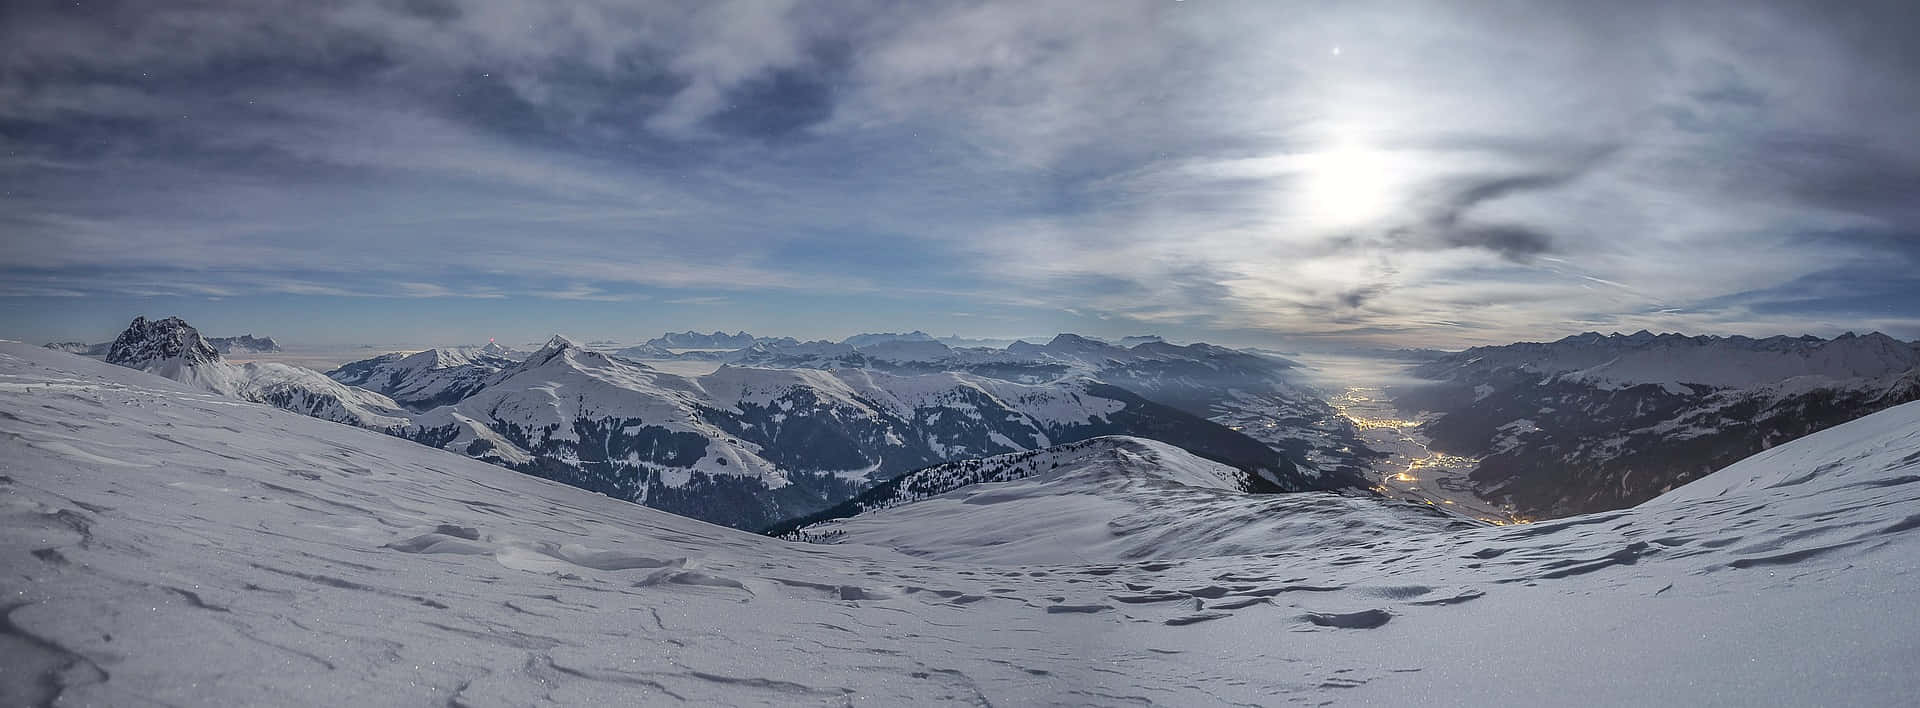 Snöigtmountain View Panoramabild.